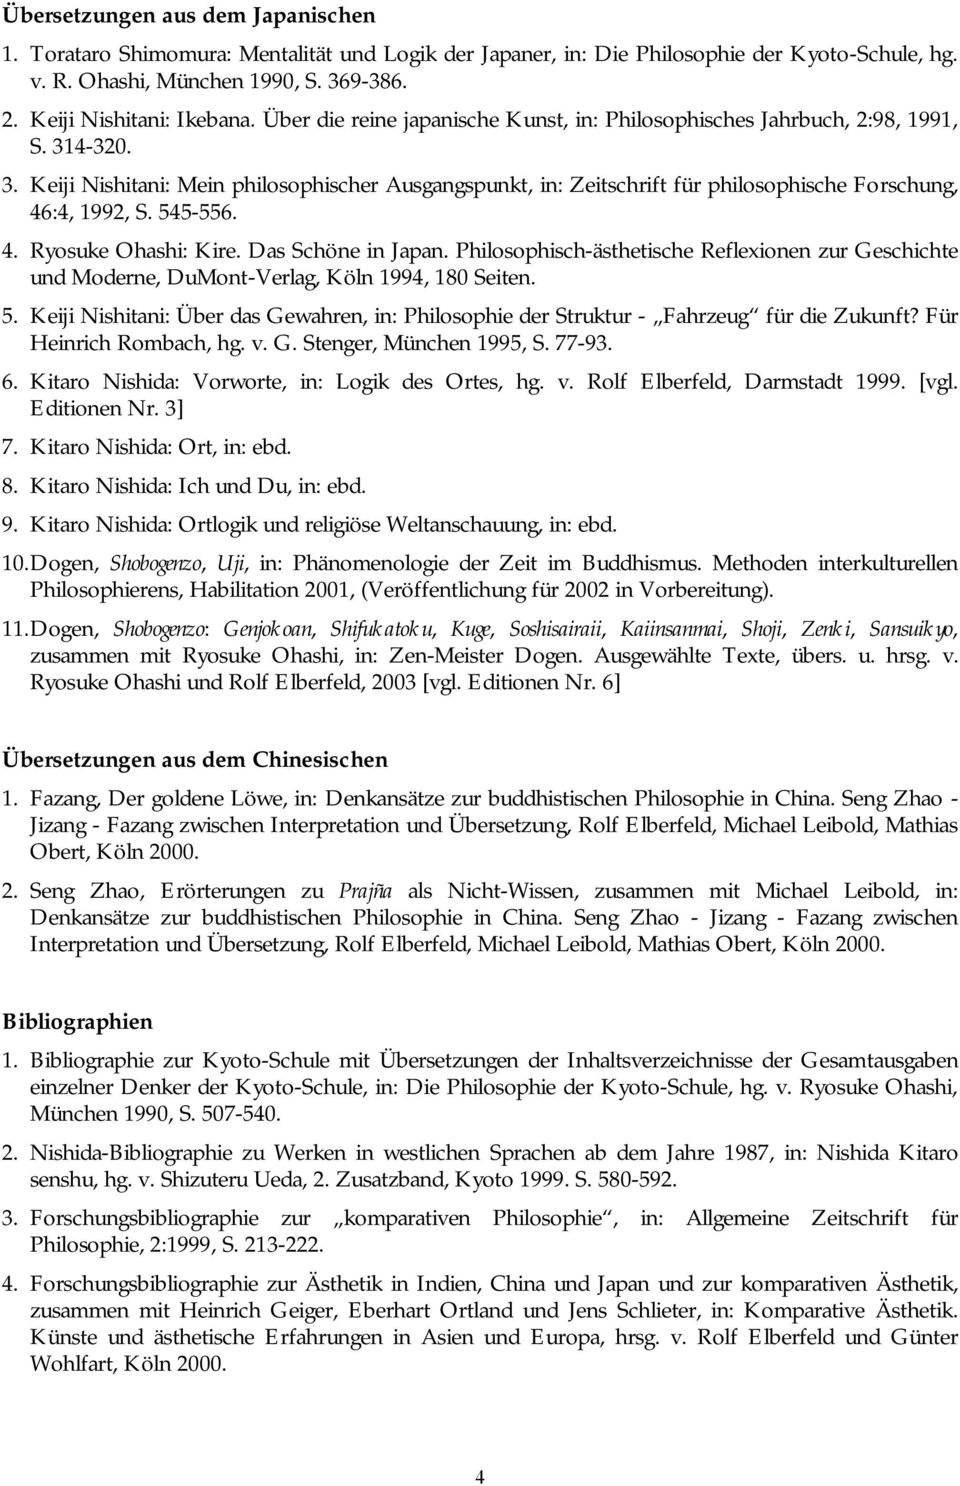 4-320. 3. Keiji Nishitani: Mein philosophischer Ausgangspunkt, in: Zeitschrift für philosophische Forschung, 46:4, 1992, S. 545-556. 4. Ryosuke Ohashi: Kire. Das Schöne in Japan.